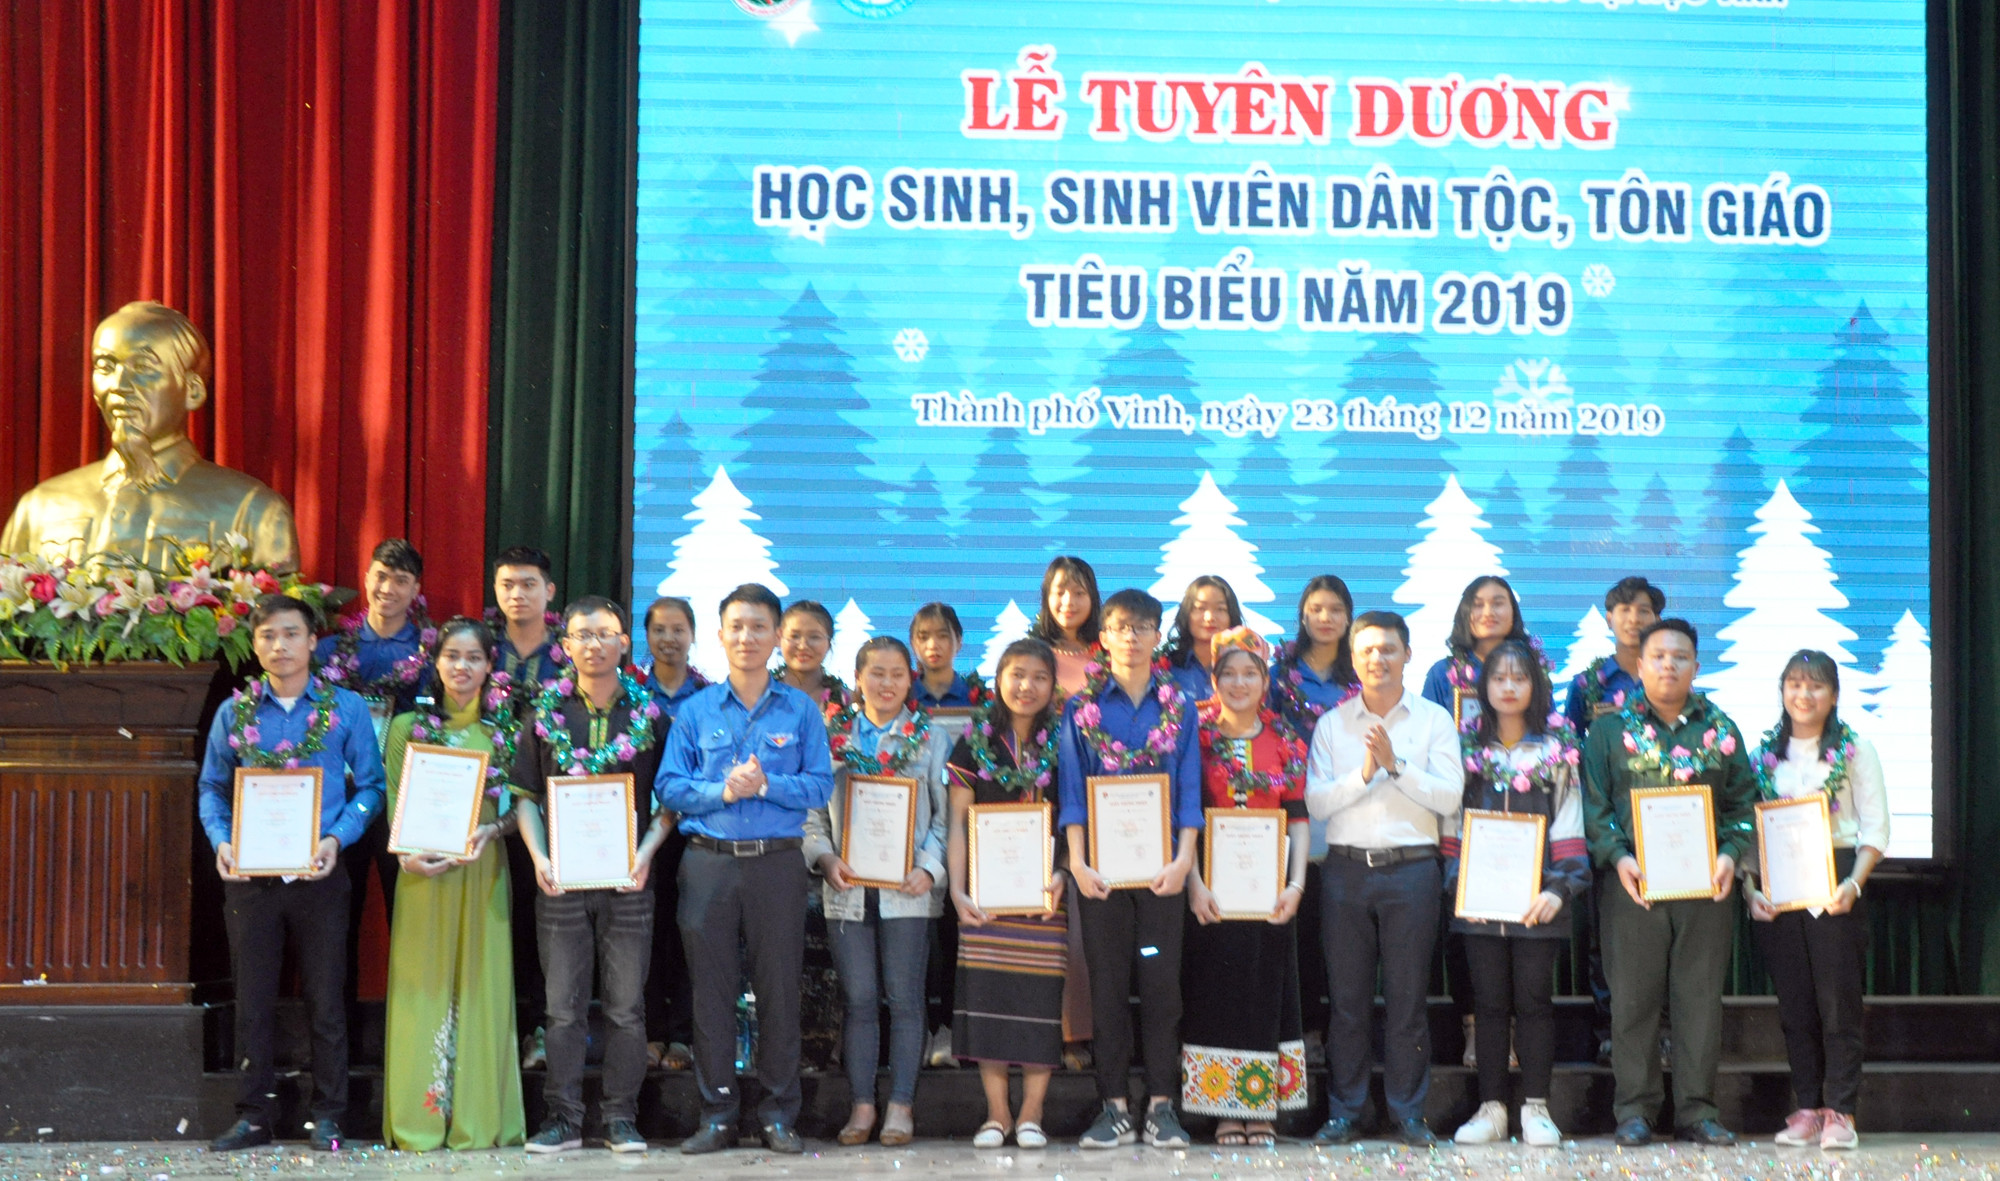 Đại diện Tỉnh đoàn và Đoàn Thanh niên Trường Đại học Vinh trao tặng Giấy khen cho các học sinh, sinh viên dân tộc, tôn giáo tiêu biểu.